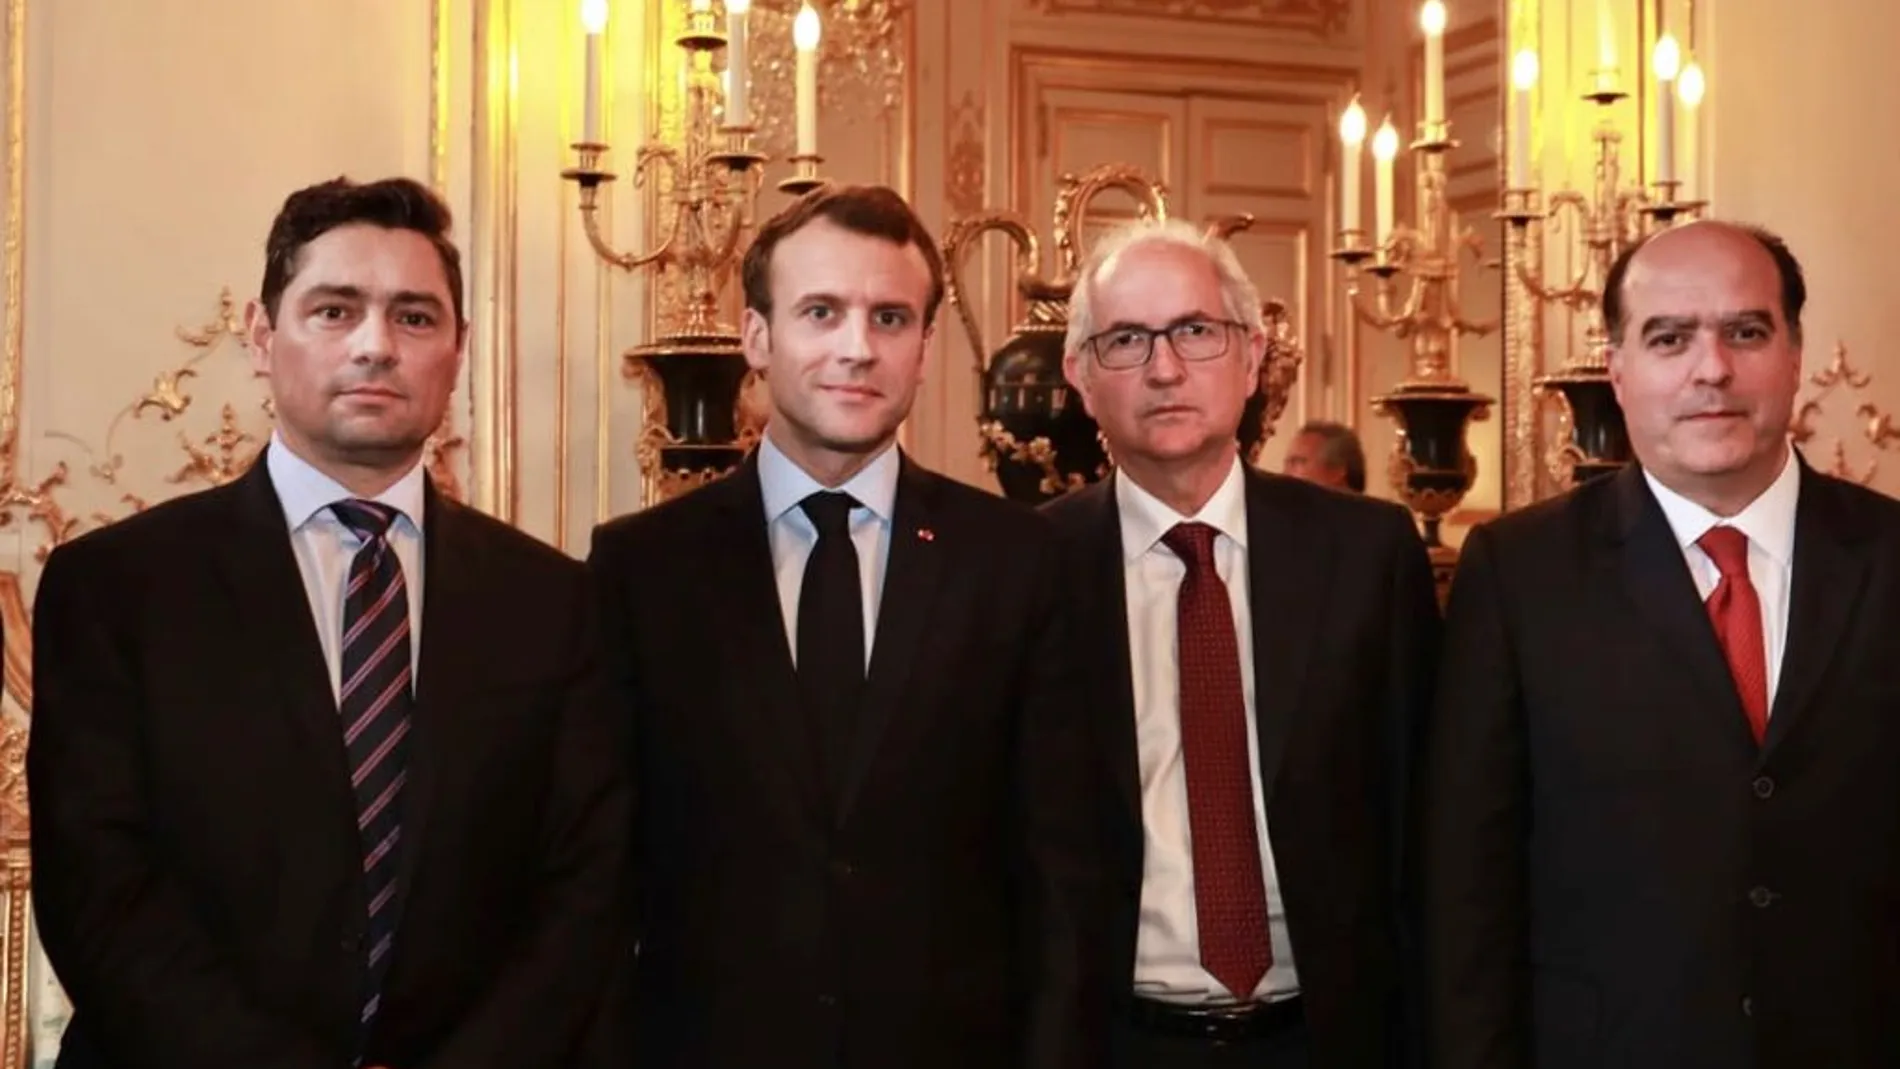 El presidente francés, Emmanuel Macron, recibió a un grupo de opositores venezolanos en abril de 2018